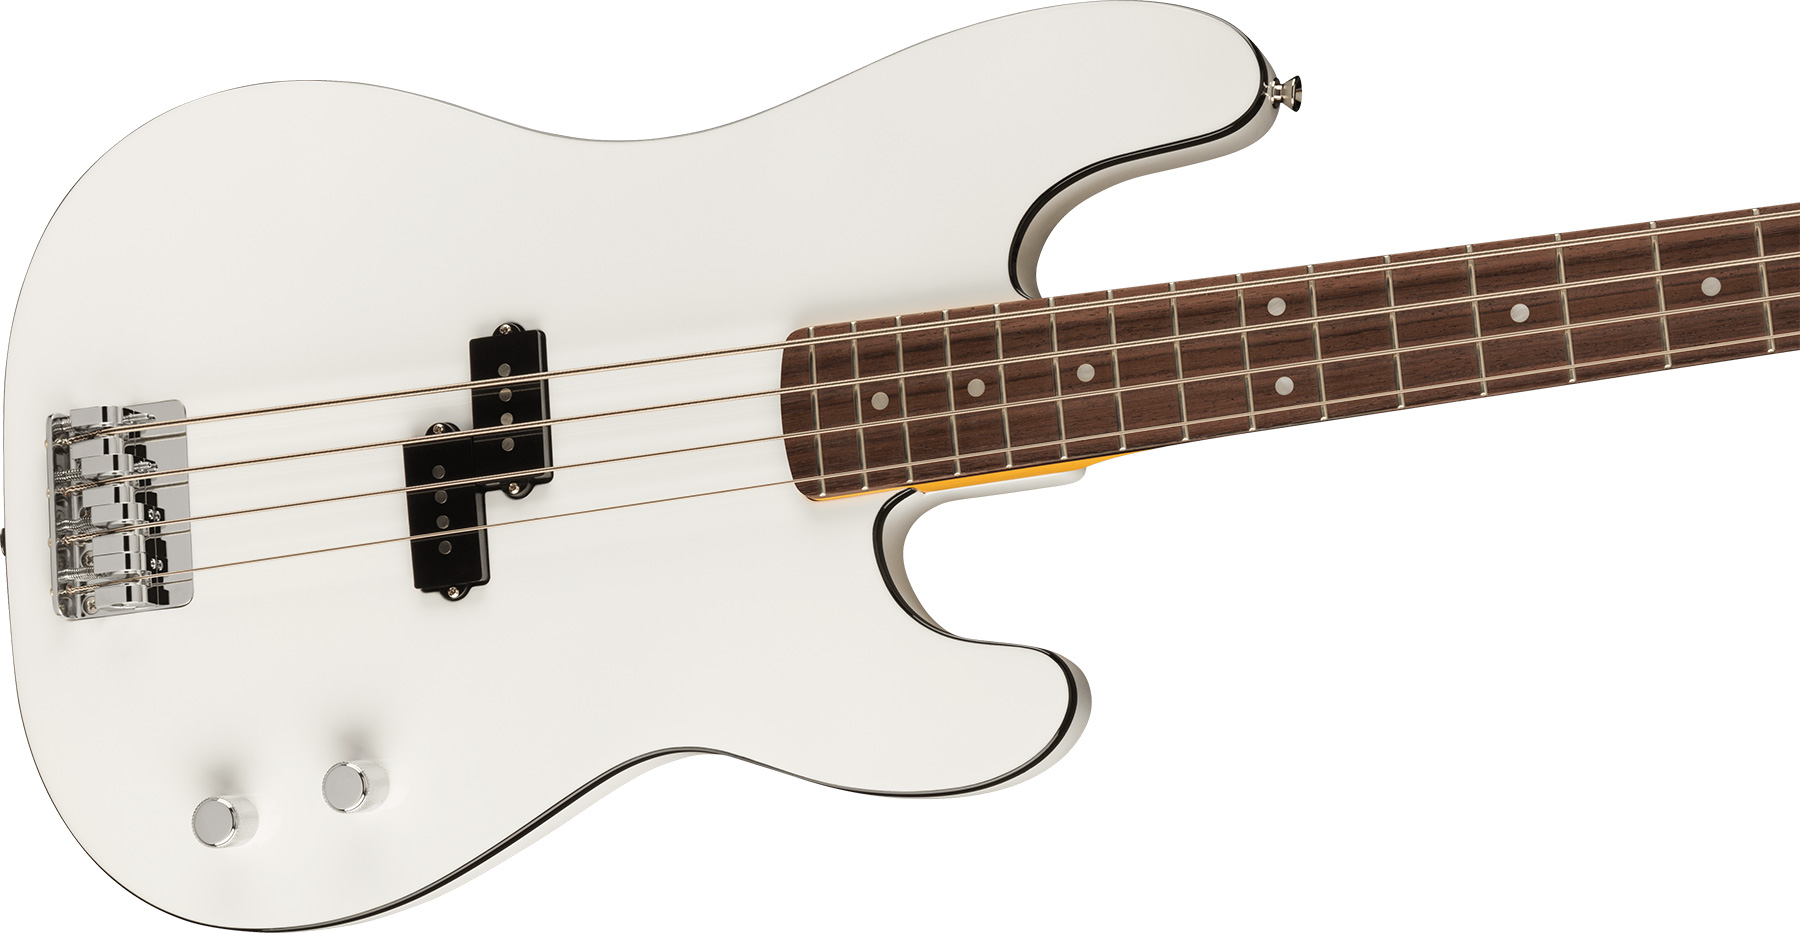 Fender Precision Bass Aerodyne Special Jap Rw - Bright White - Solidbody E-bass - Variation 2